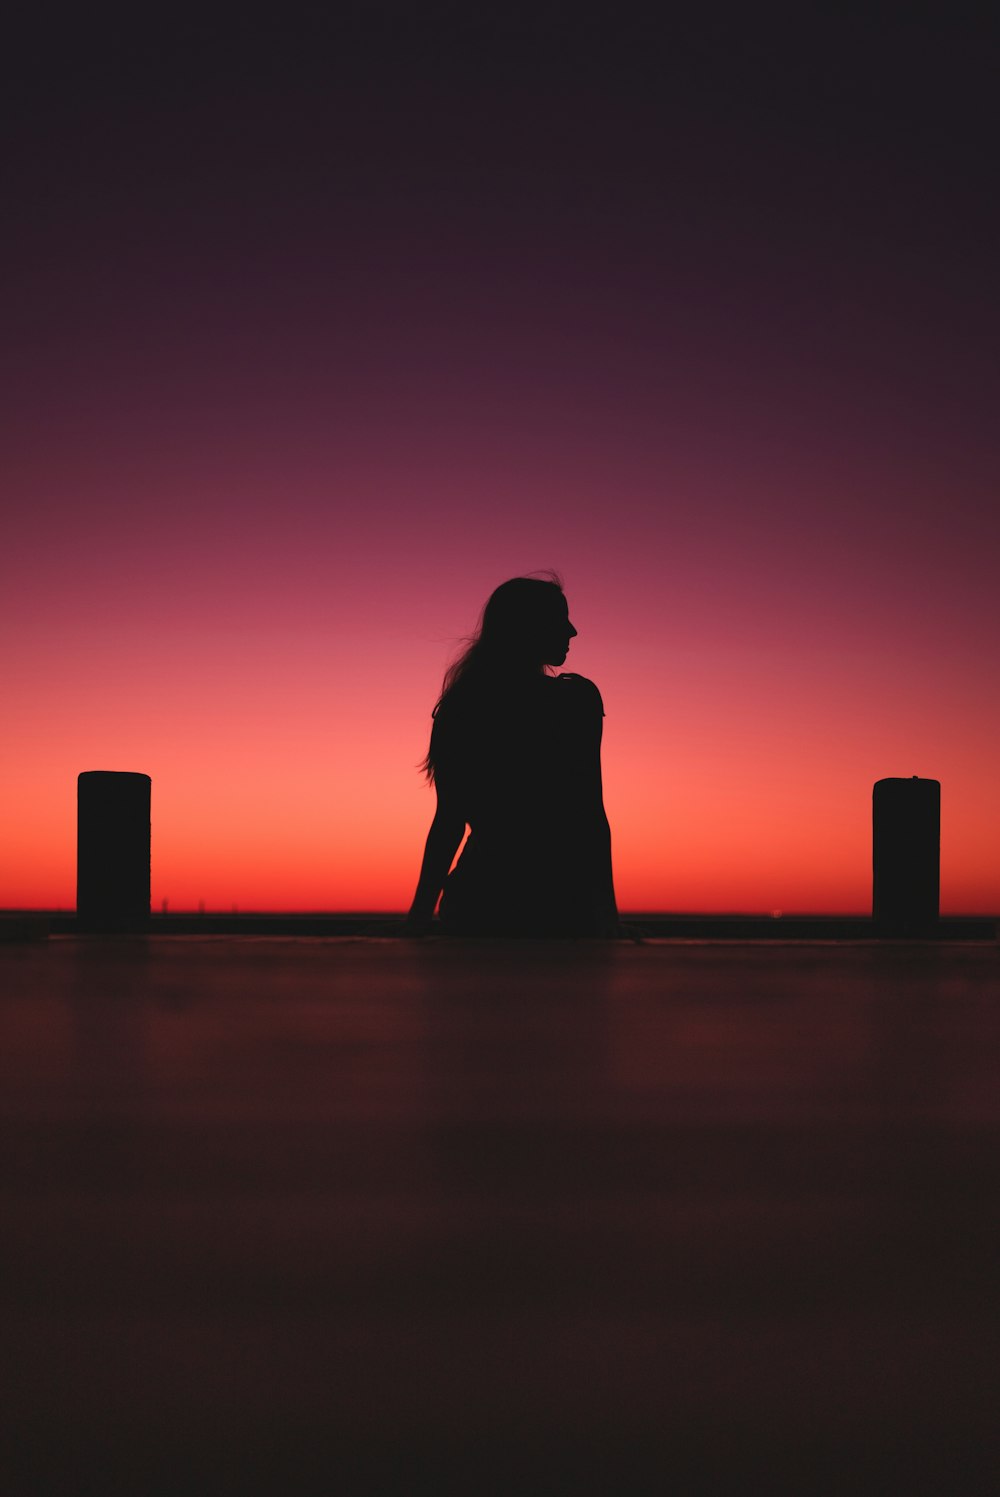 silhouette di uomo e donna in piedi sulla spiaggia durante il tramonto